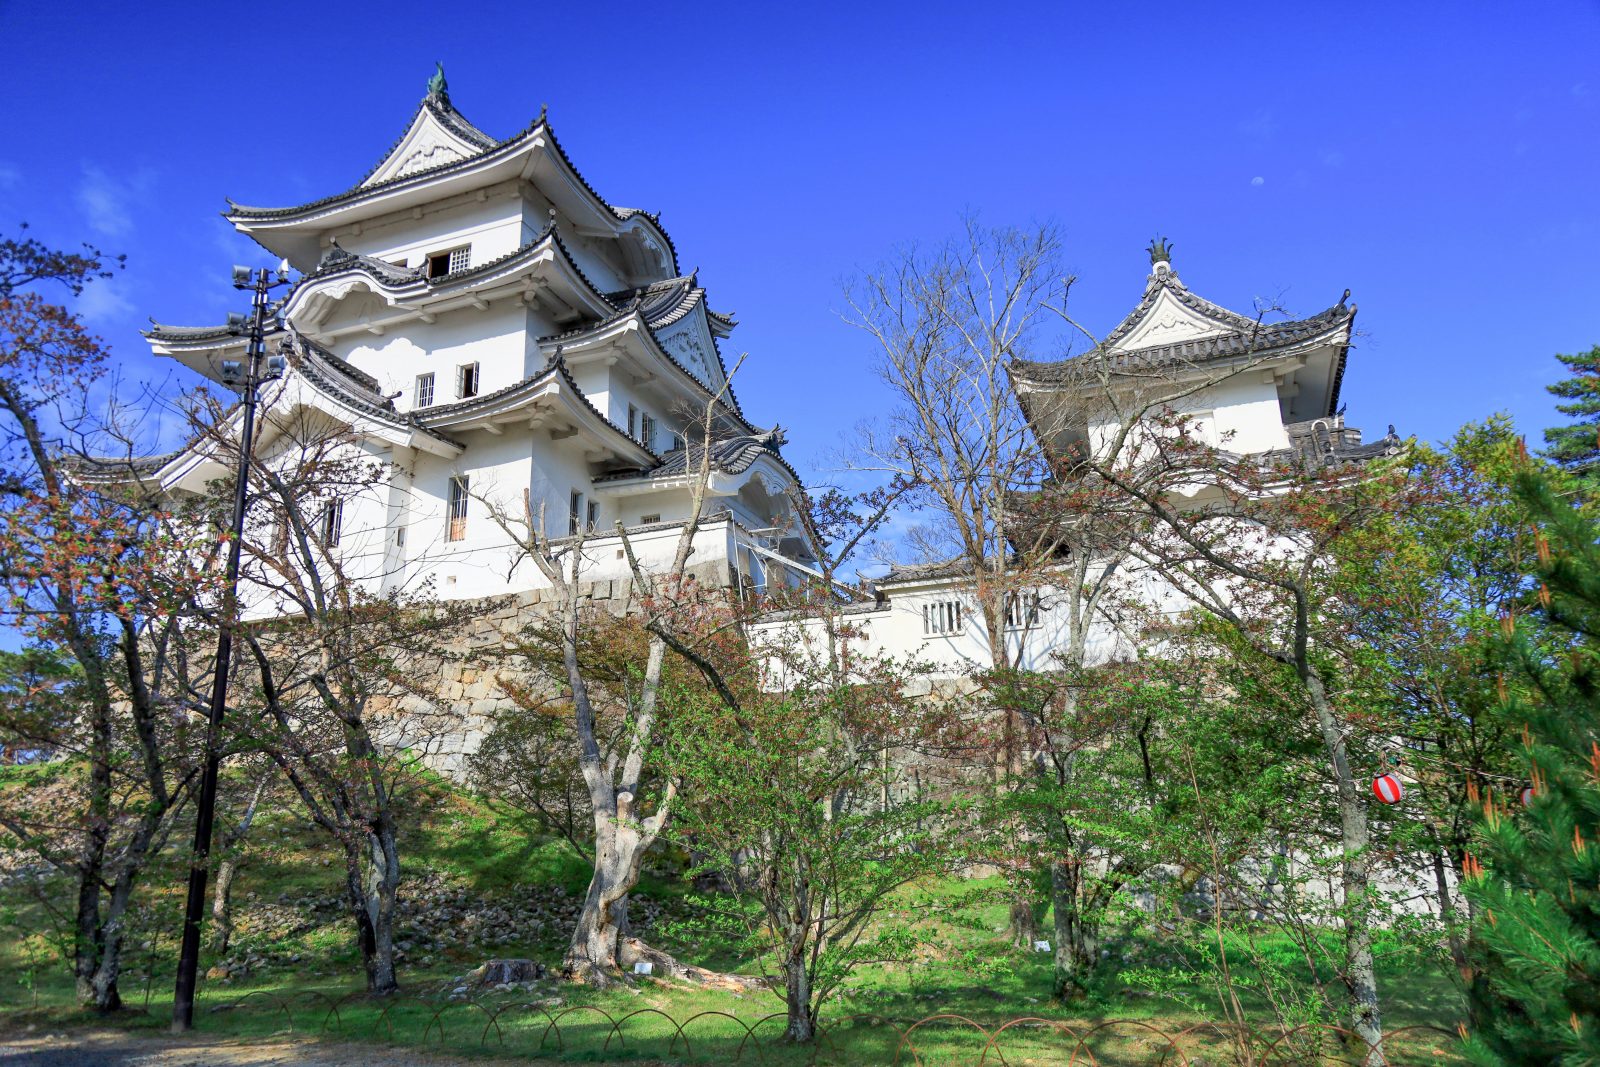 伊賀上野城の観光情報と写真一覧 | 三重フォトギャラリー